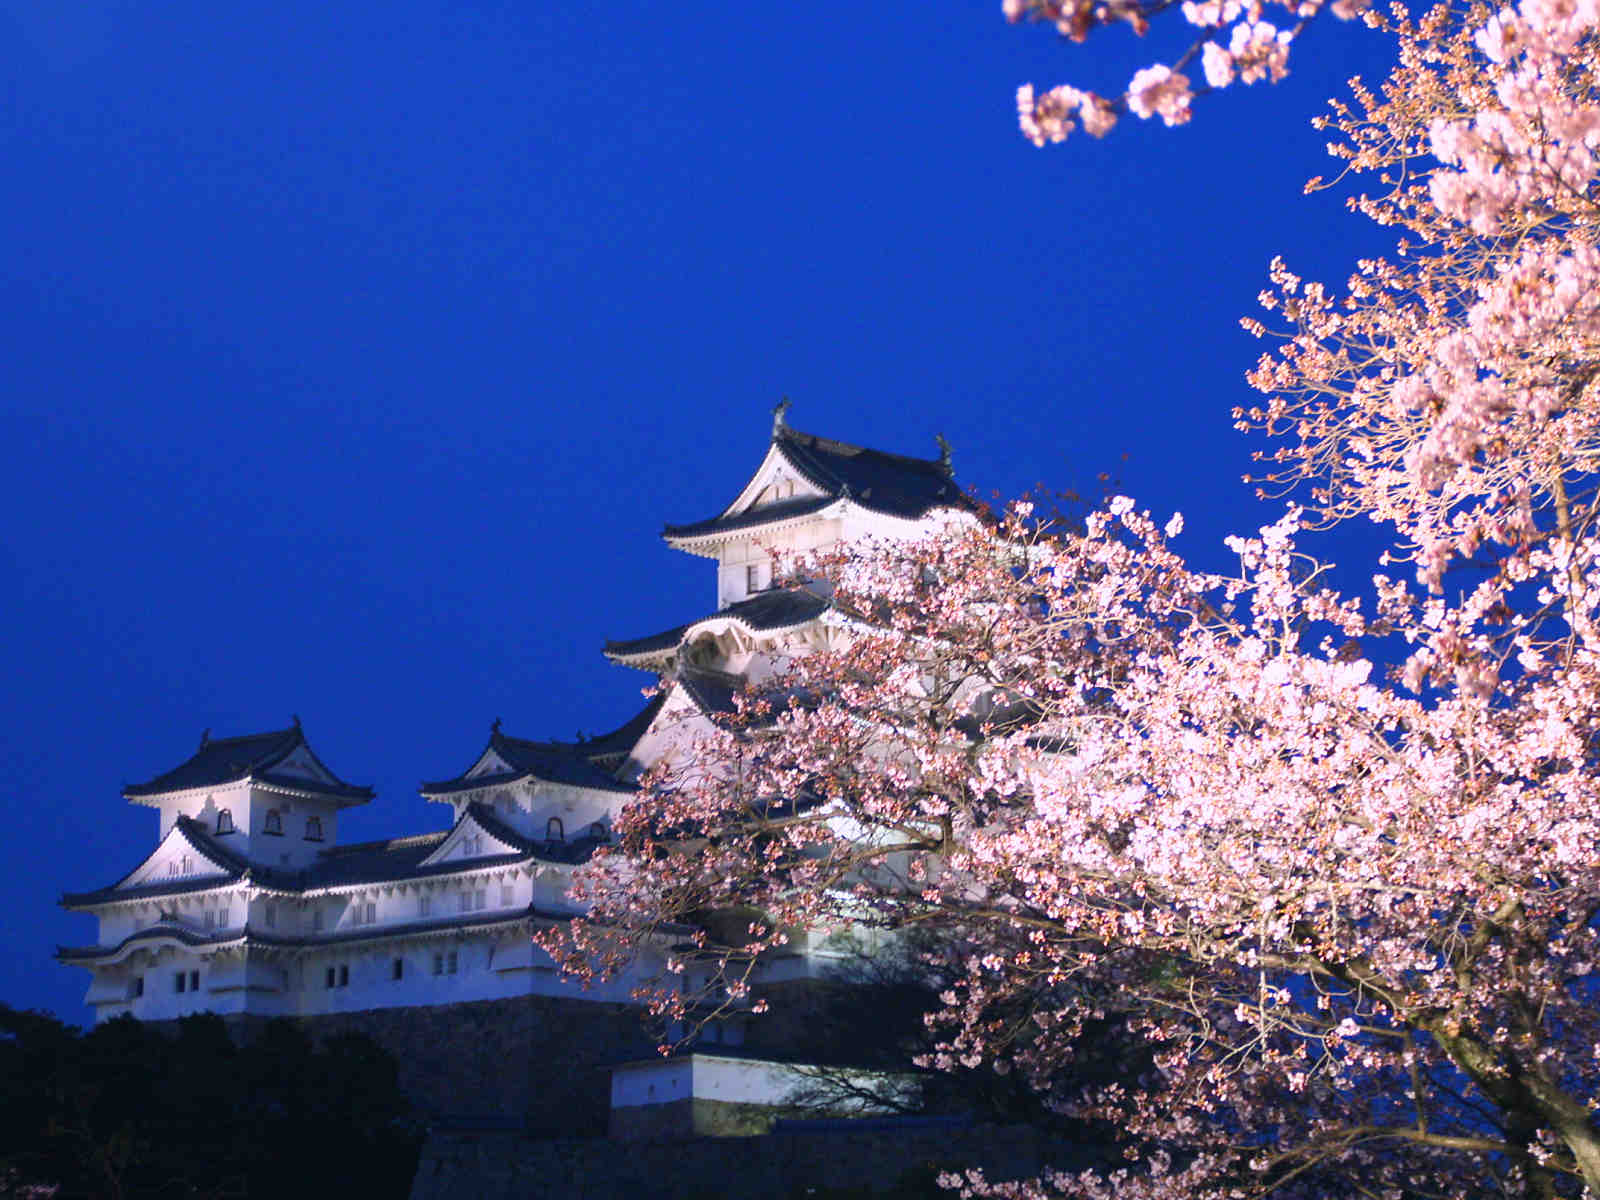 姫路城夜桜会18 花あかり 姫路城と桜のライトアップ